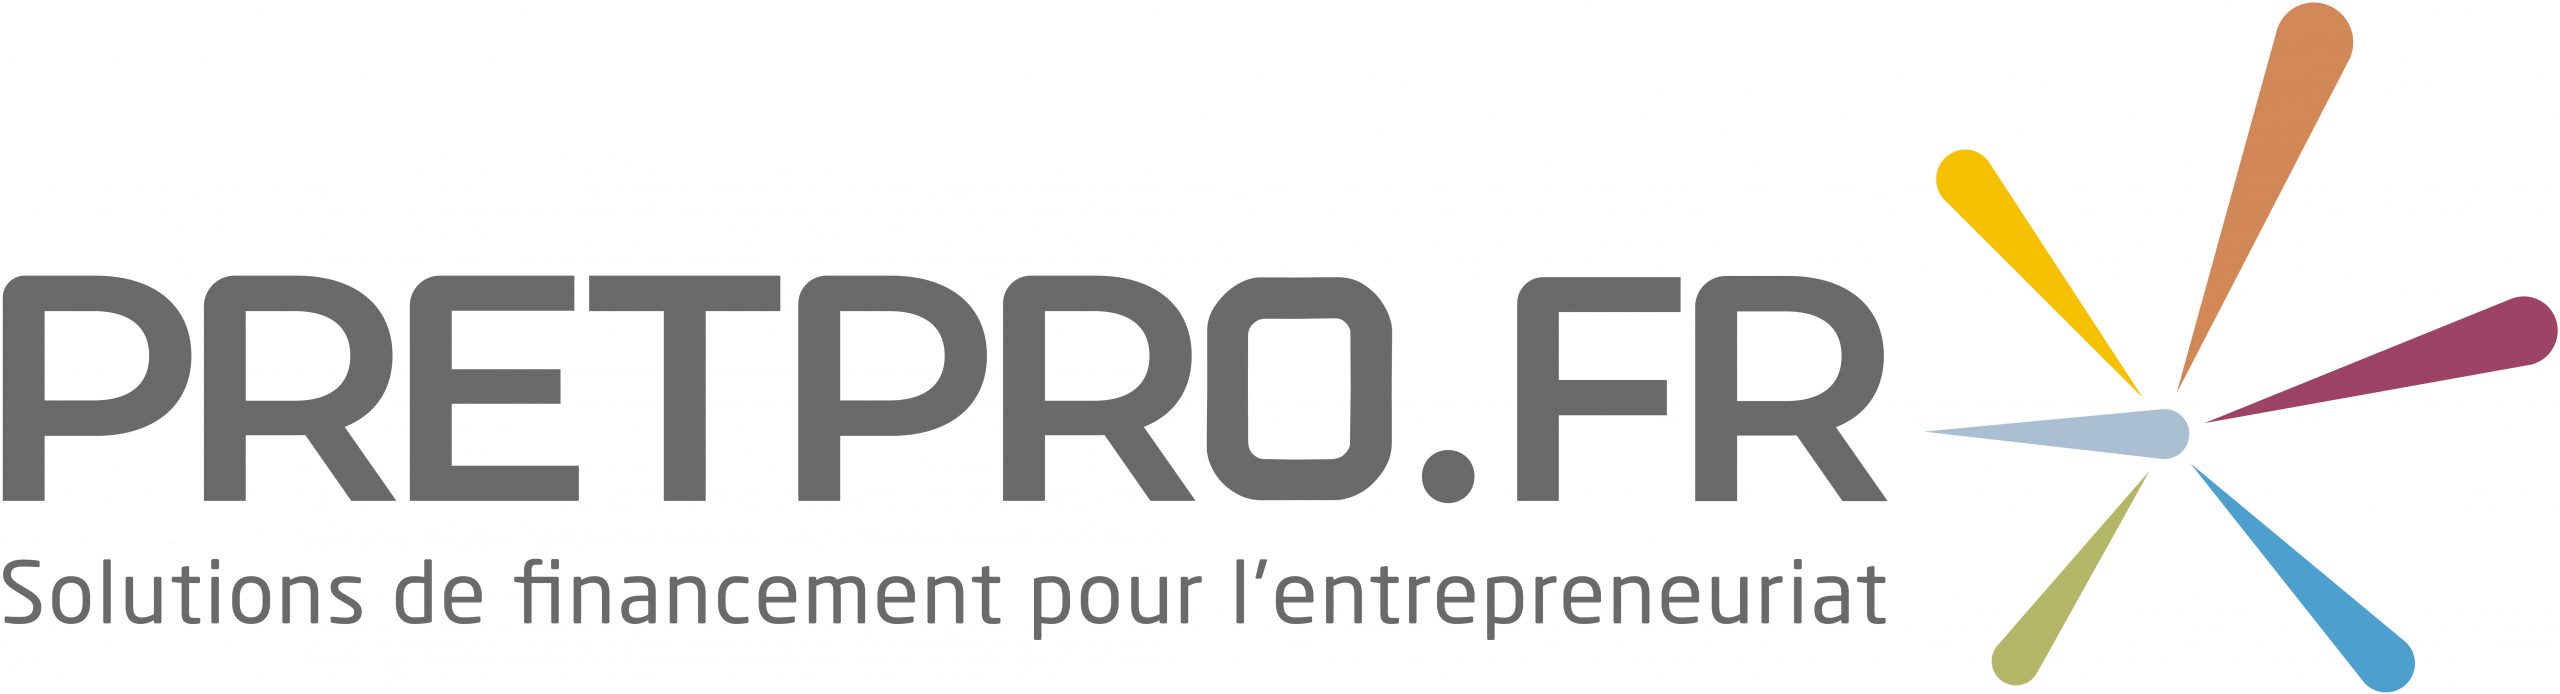 Pretpro.fr – Hauts-de-france